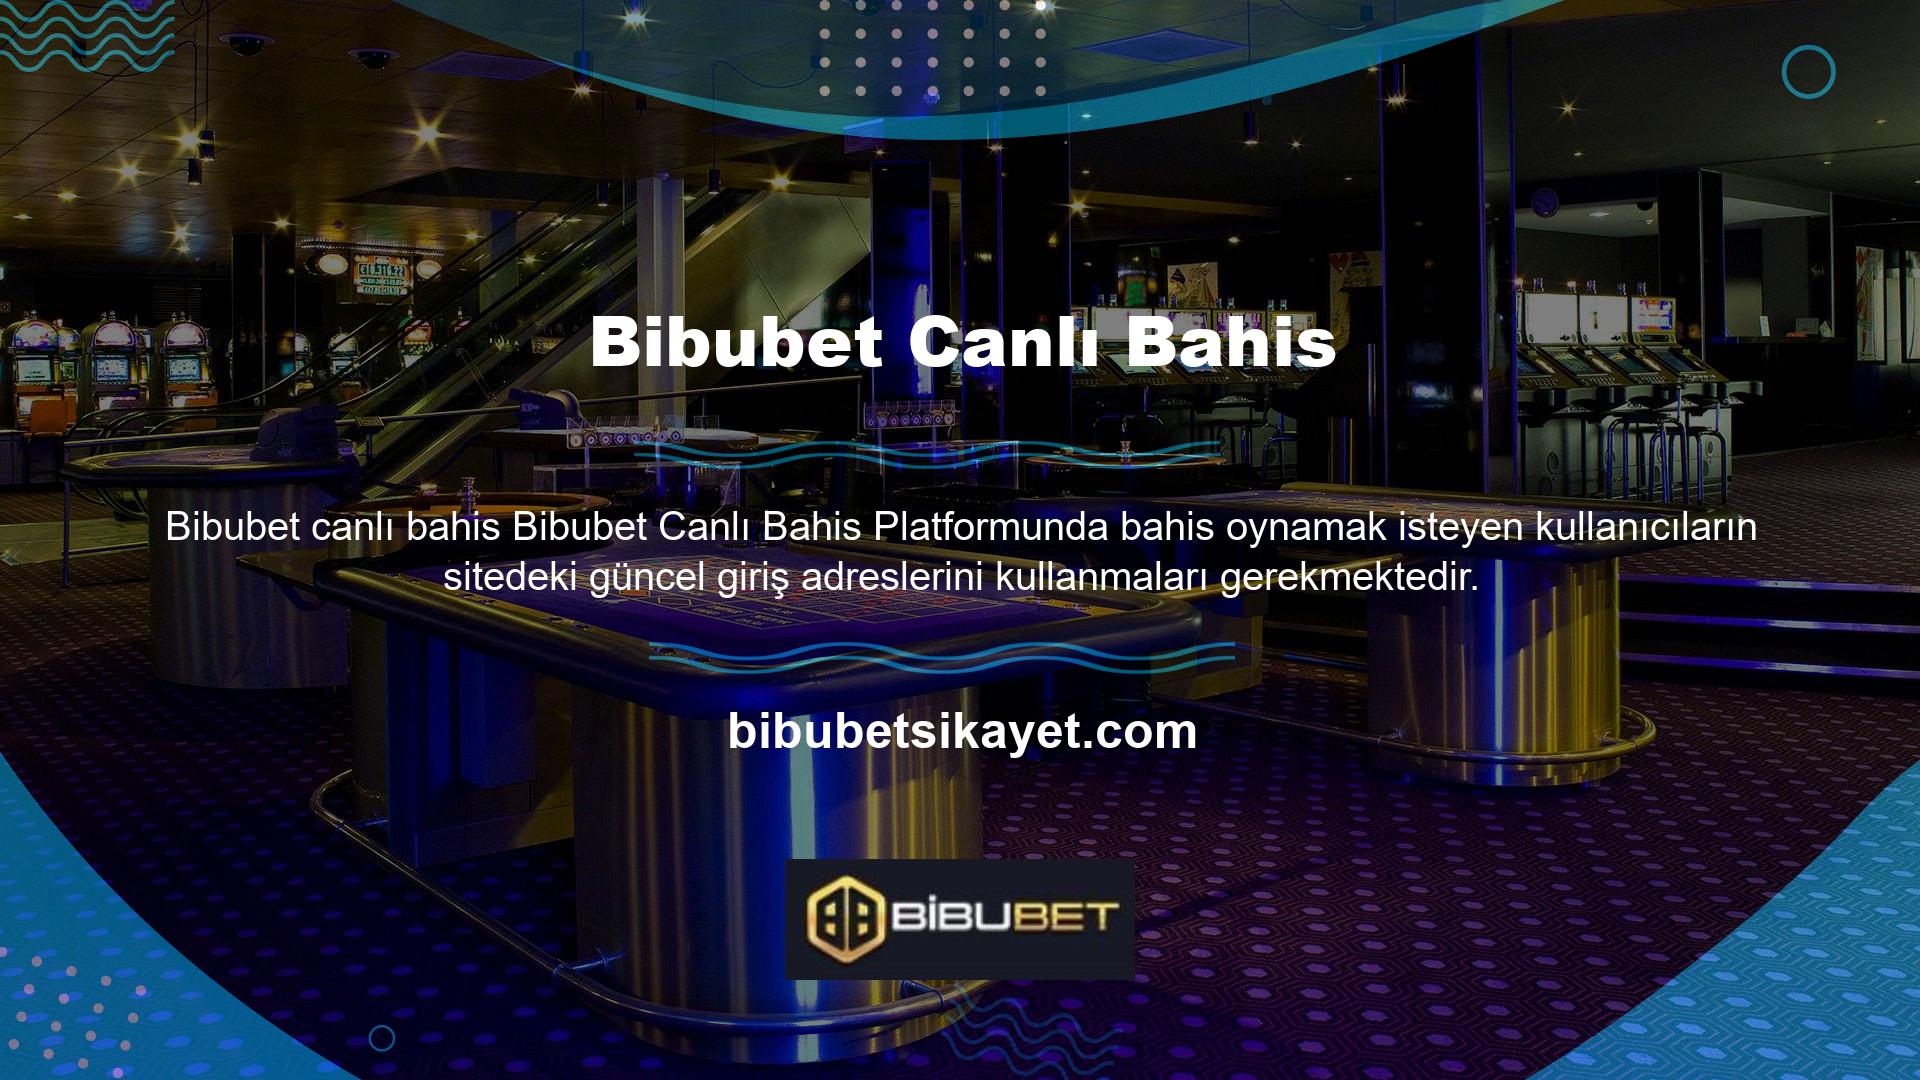 Bu nedenle Bibubet internet siteleri zaman zaman BTK tarafından engellenebilmektedir